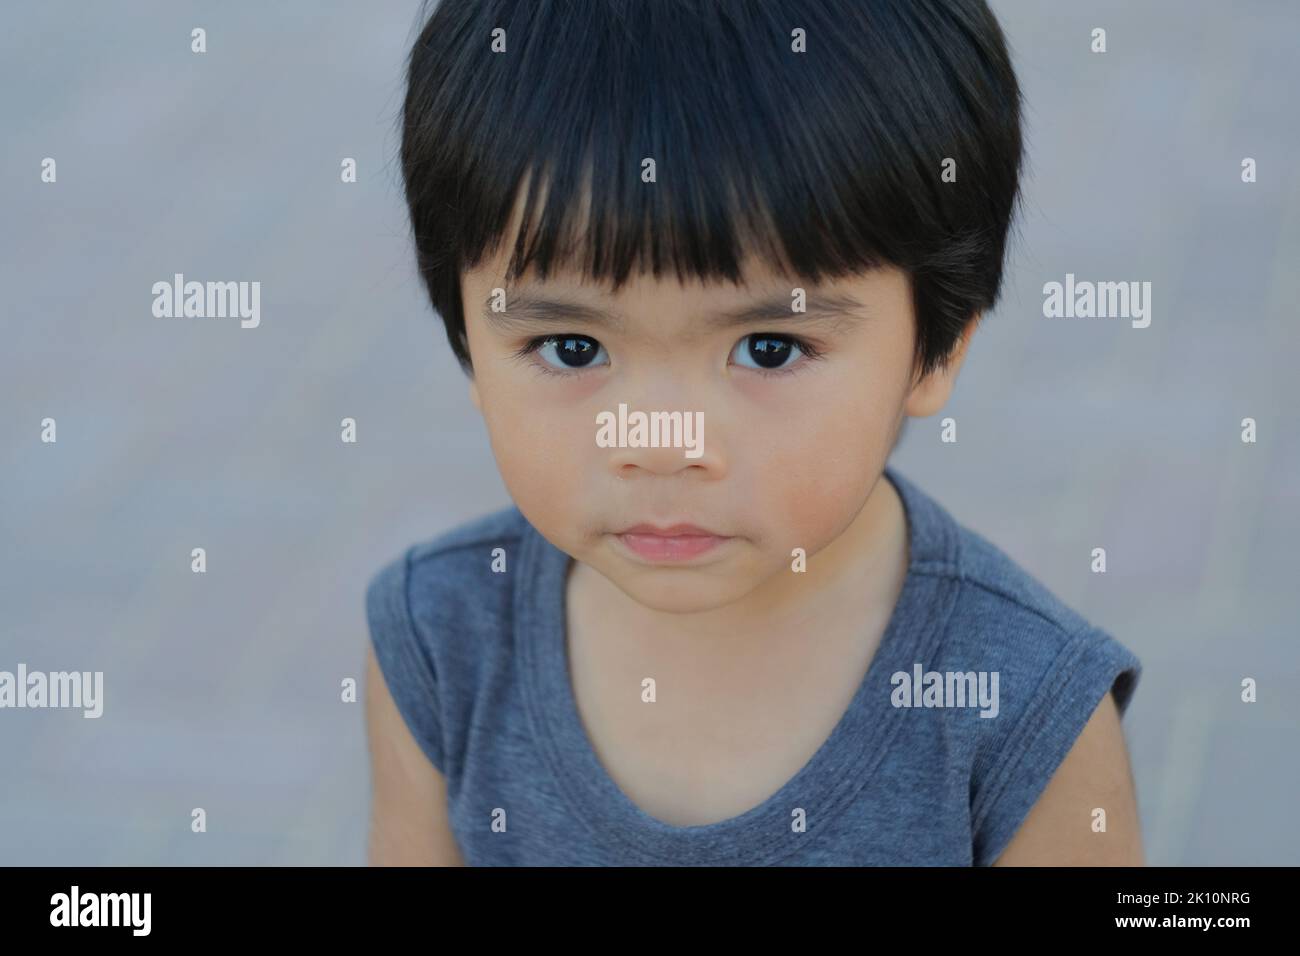 Netter philippinischer Junge, etwa 5 Jahre alt, schaut vor die Kamera. Nahaufnahme eines Tages im Freien mit einem jungen asiatischen Kind mit glänzendem, glattem Haar und schwarzen Augen. Stockfoto